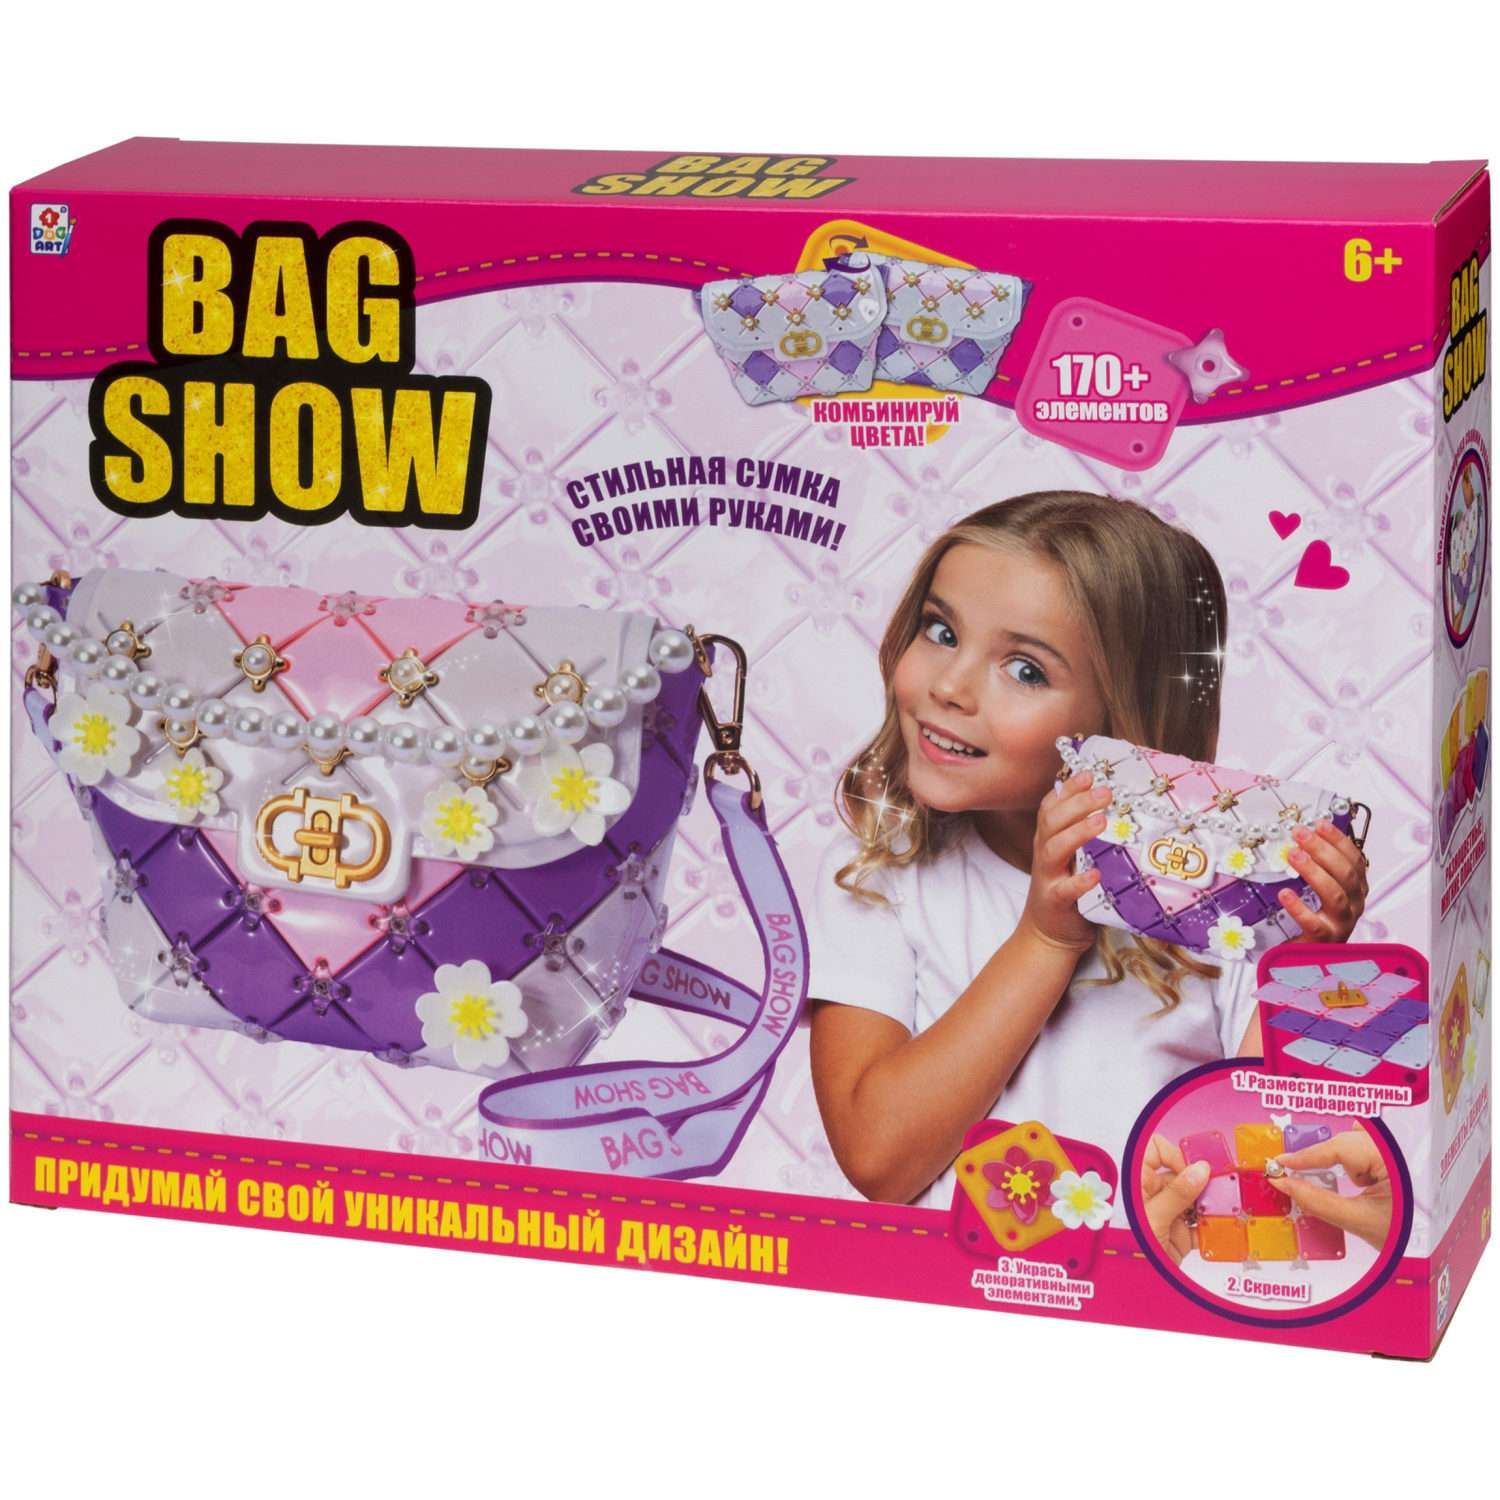 Набор для творчества 1TOY сумочка для девочки Bag Show evening party - фото 19